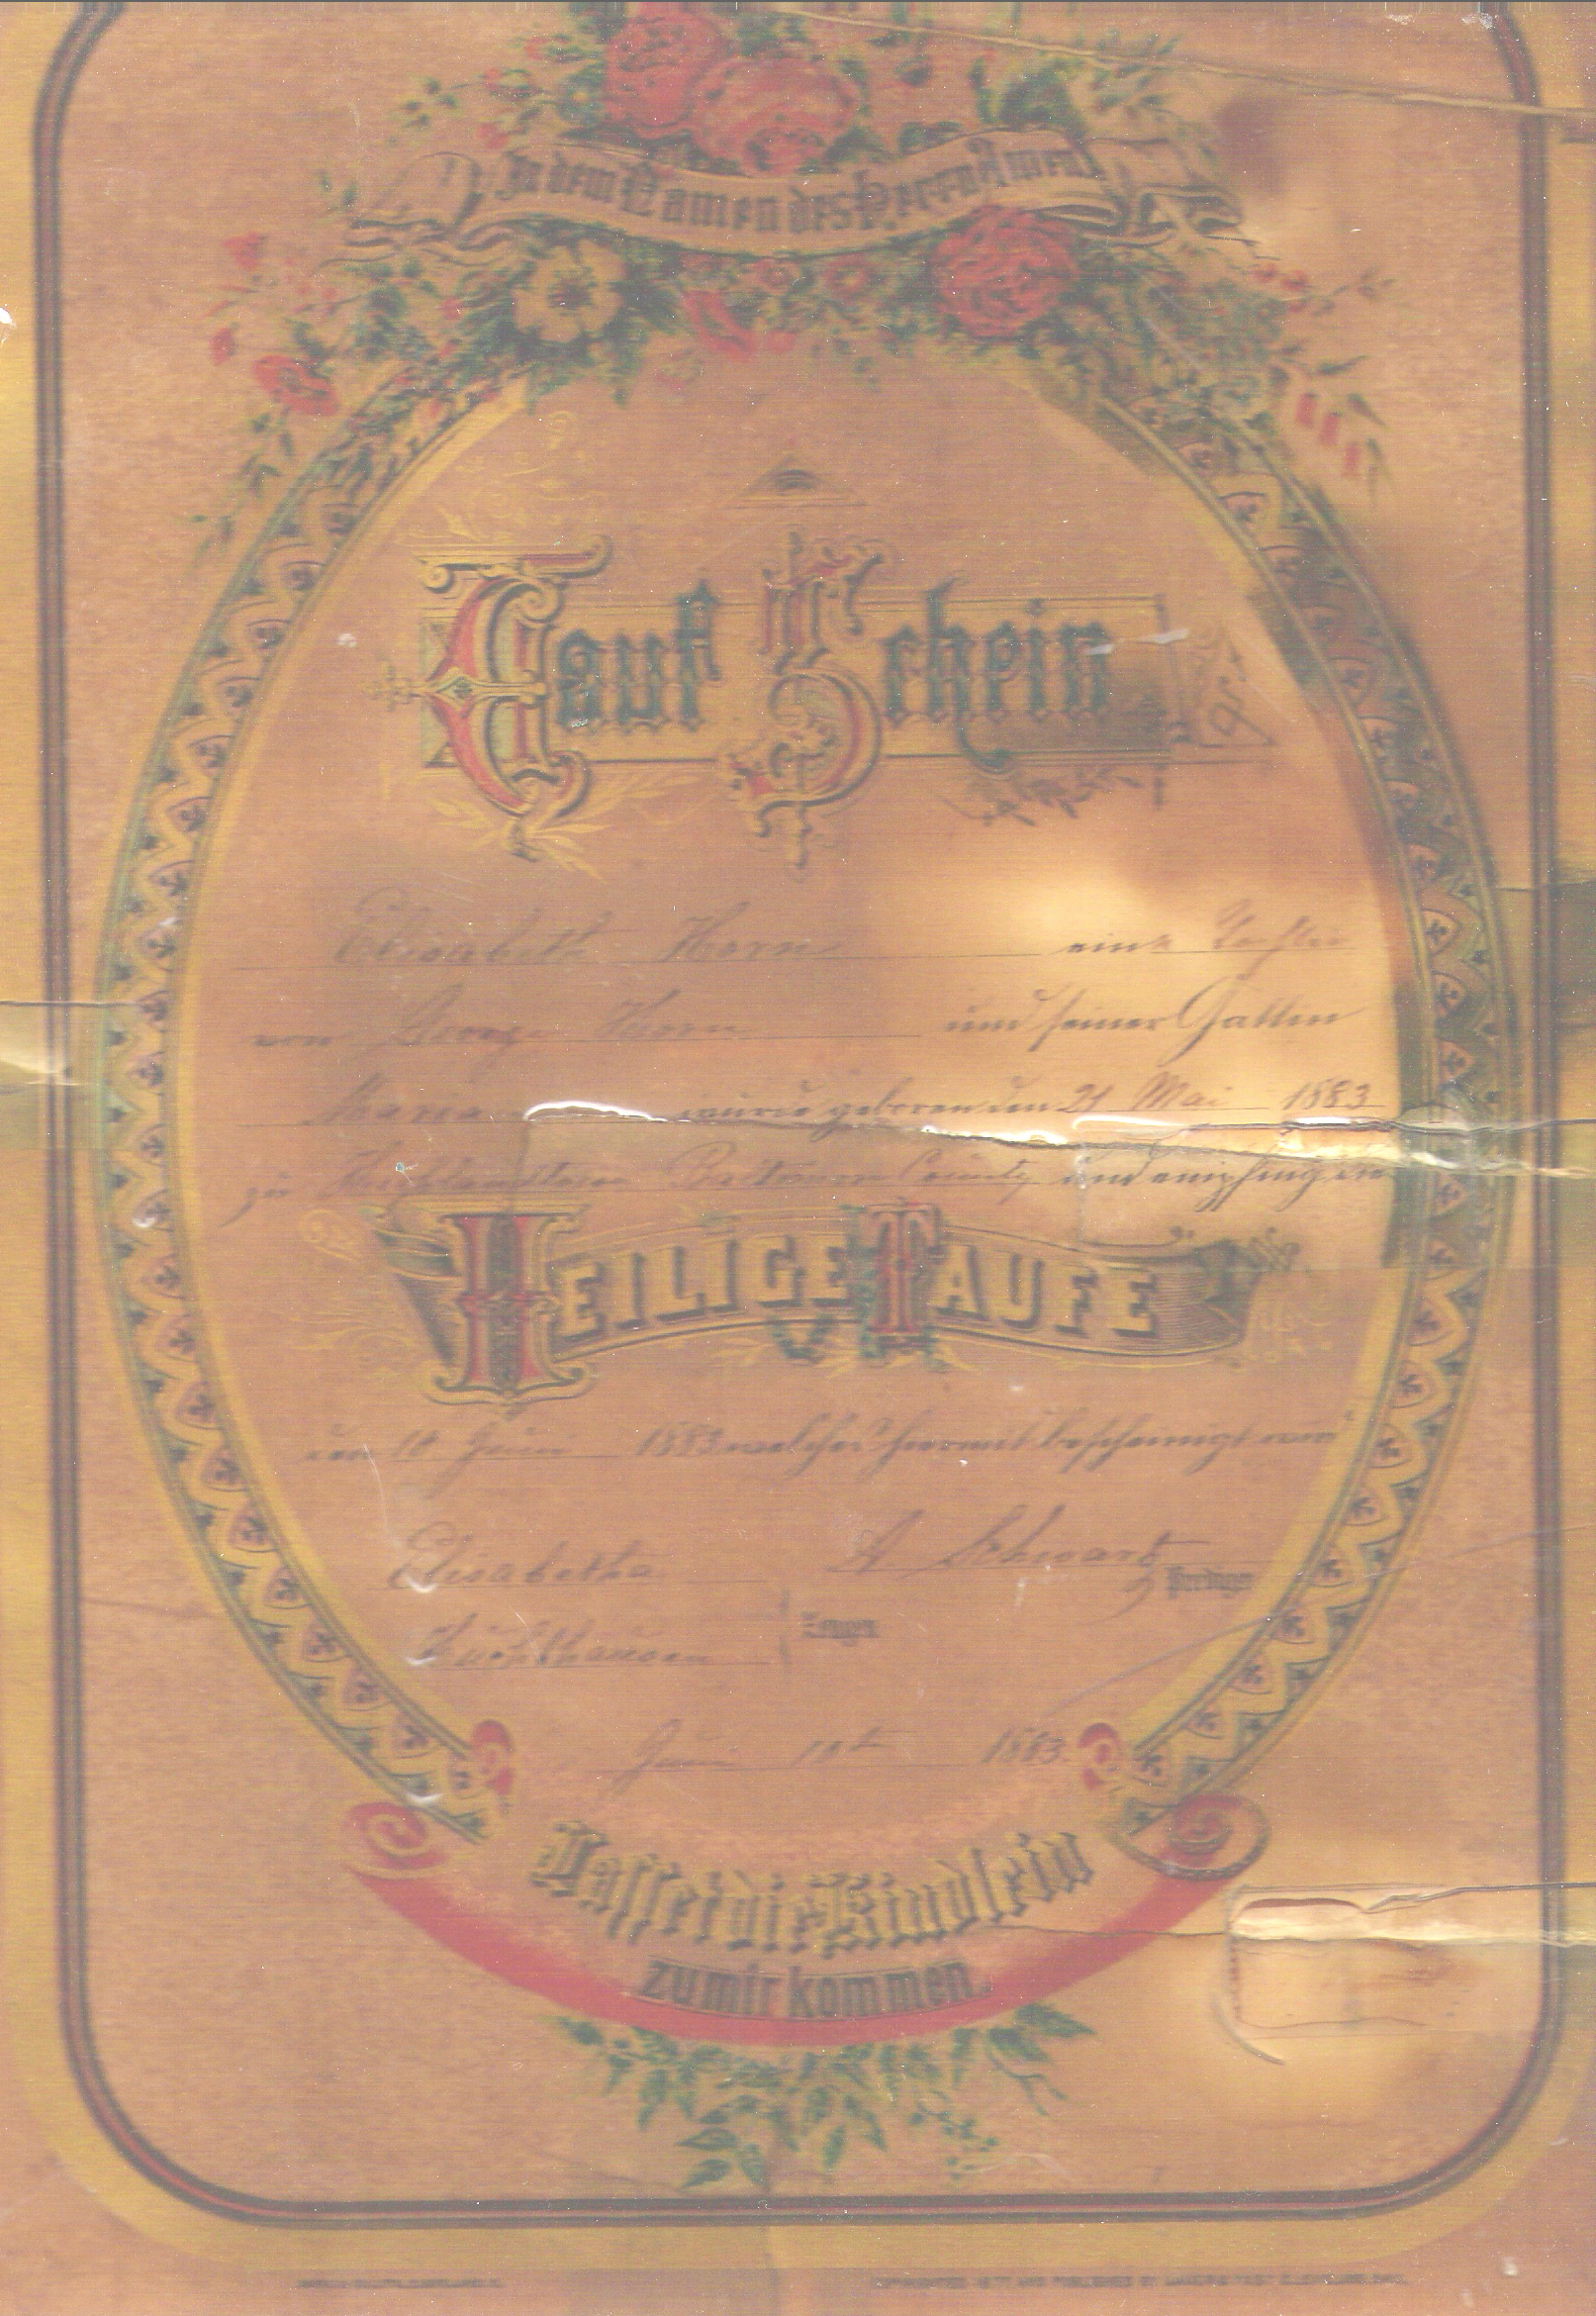 Korn or Horn certificate